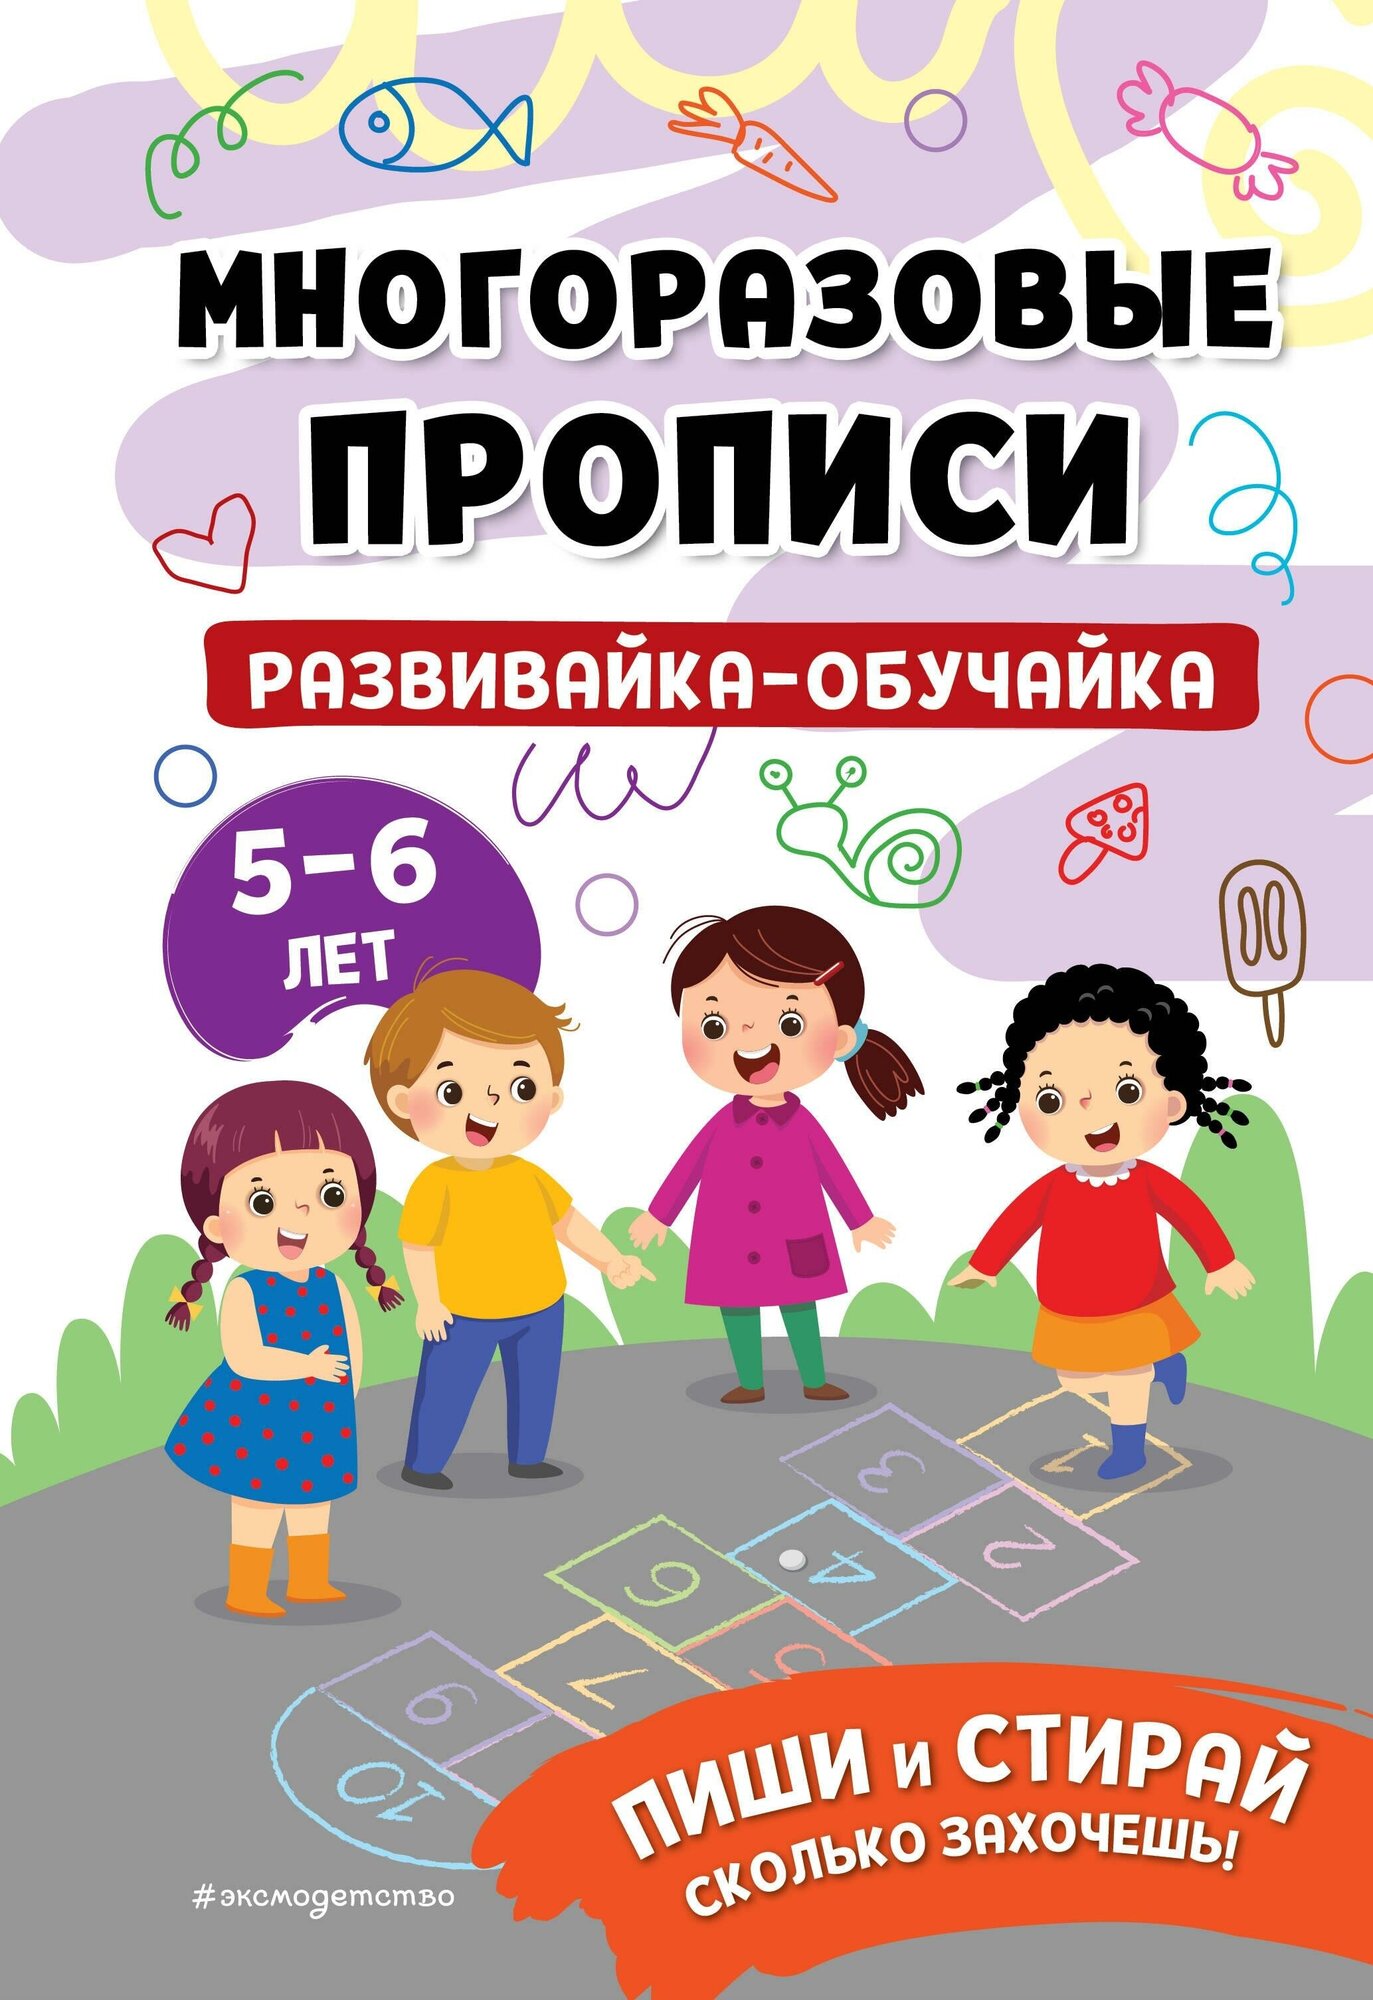 Развивайка-обучайка для детей 5-6 лет - фото №1